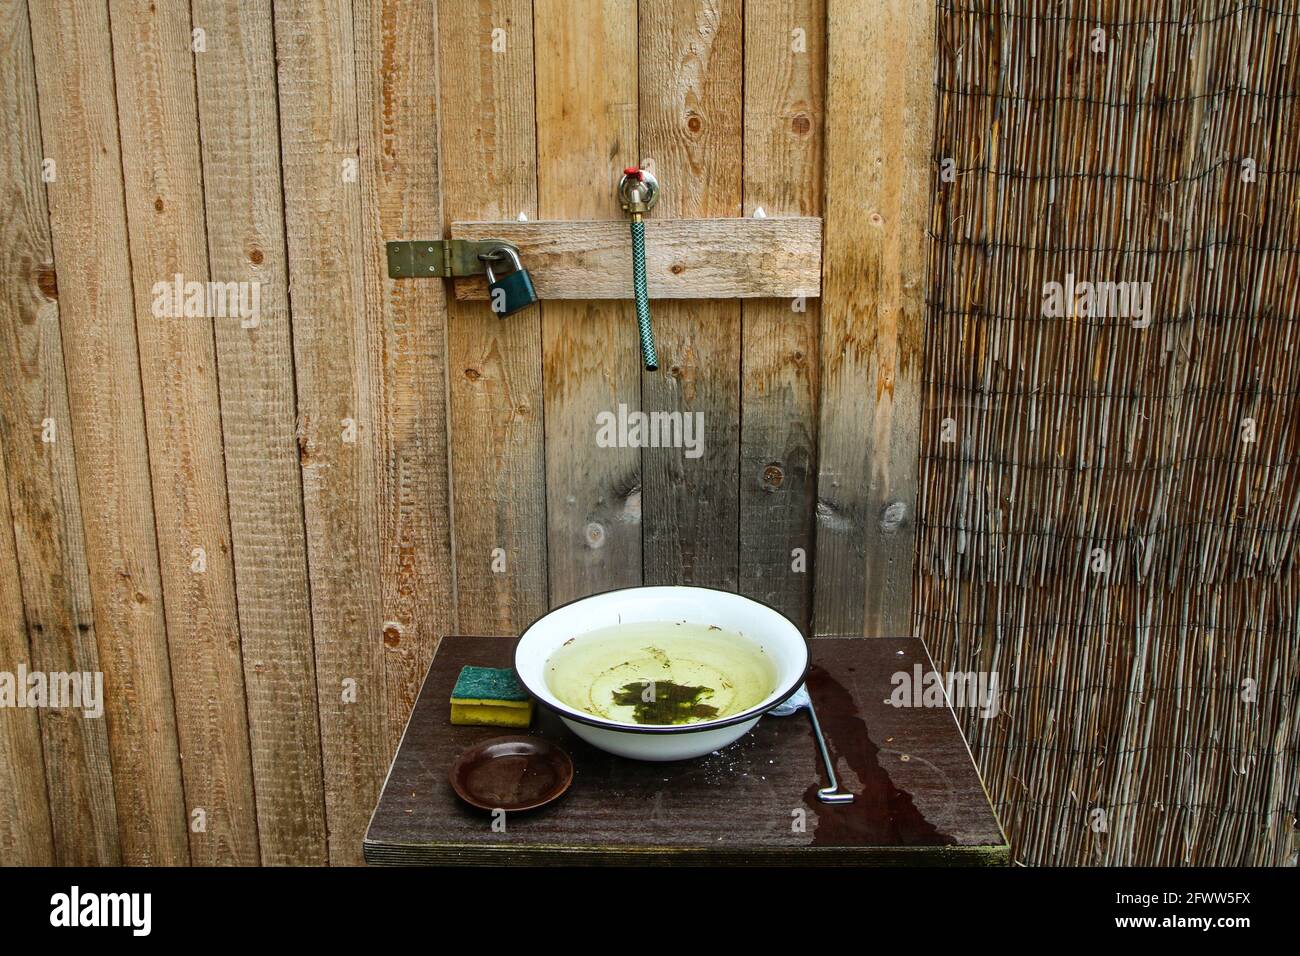 Der einfache Waschraum mit nur kaltem Wasser und Emaille-Becken. Sieht rustikal und schlecht aus Stockfoto